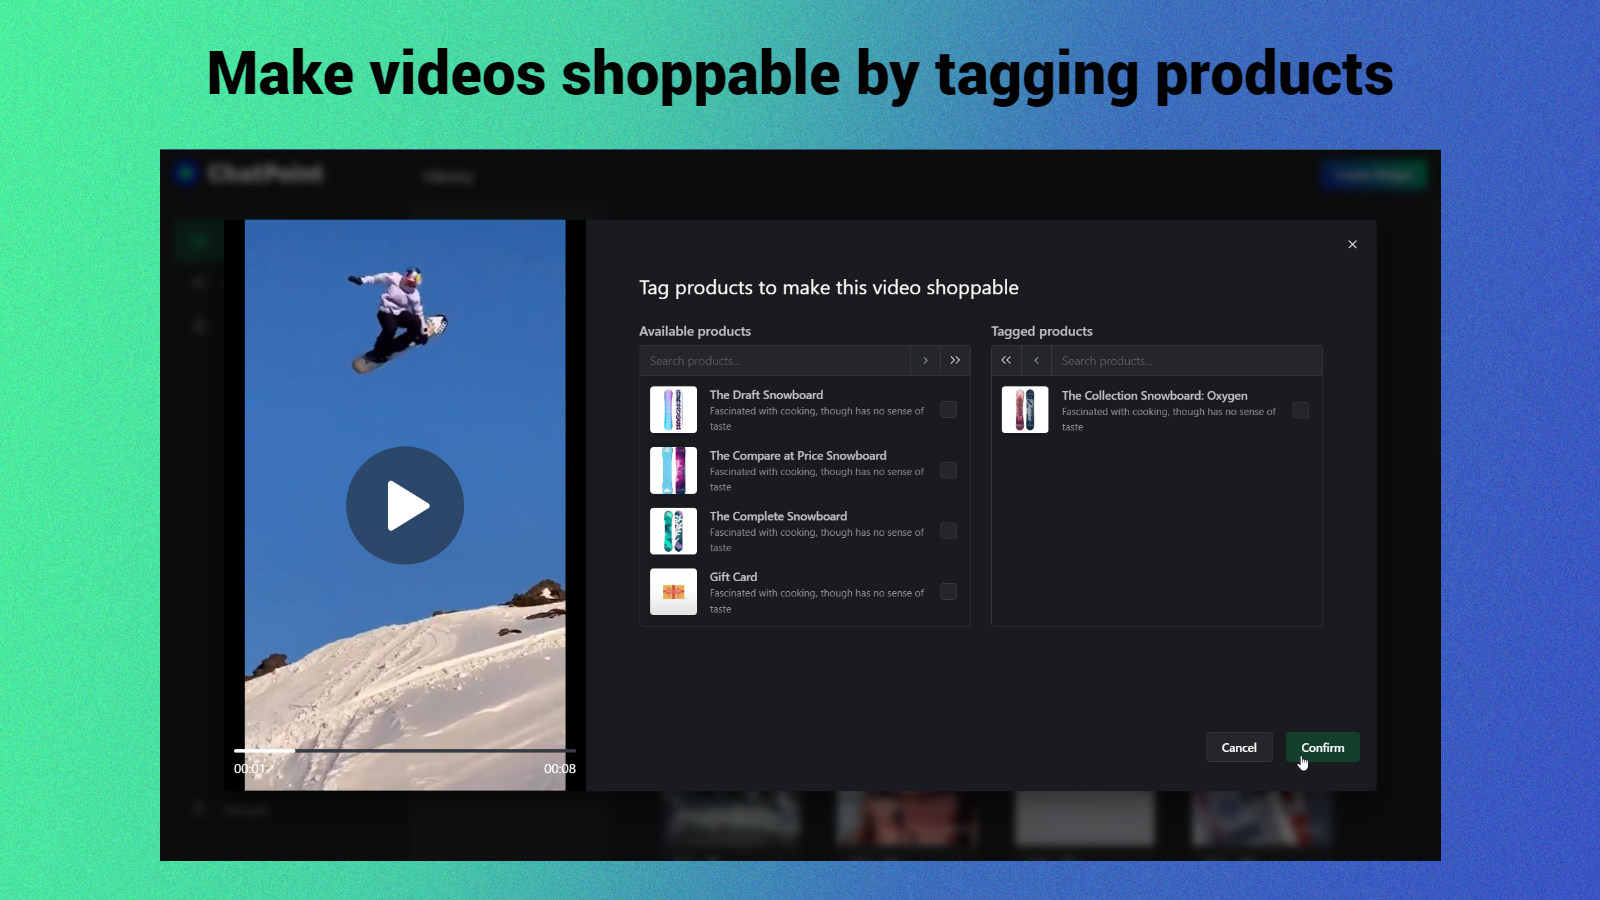 Tag videoer med produkter for at gøre dem shoppable